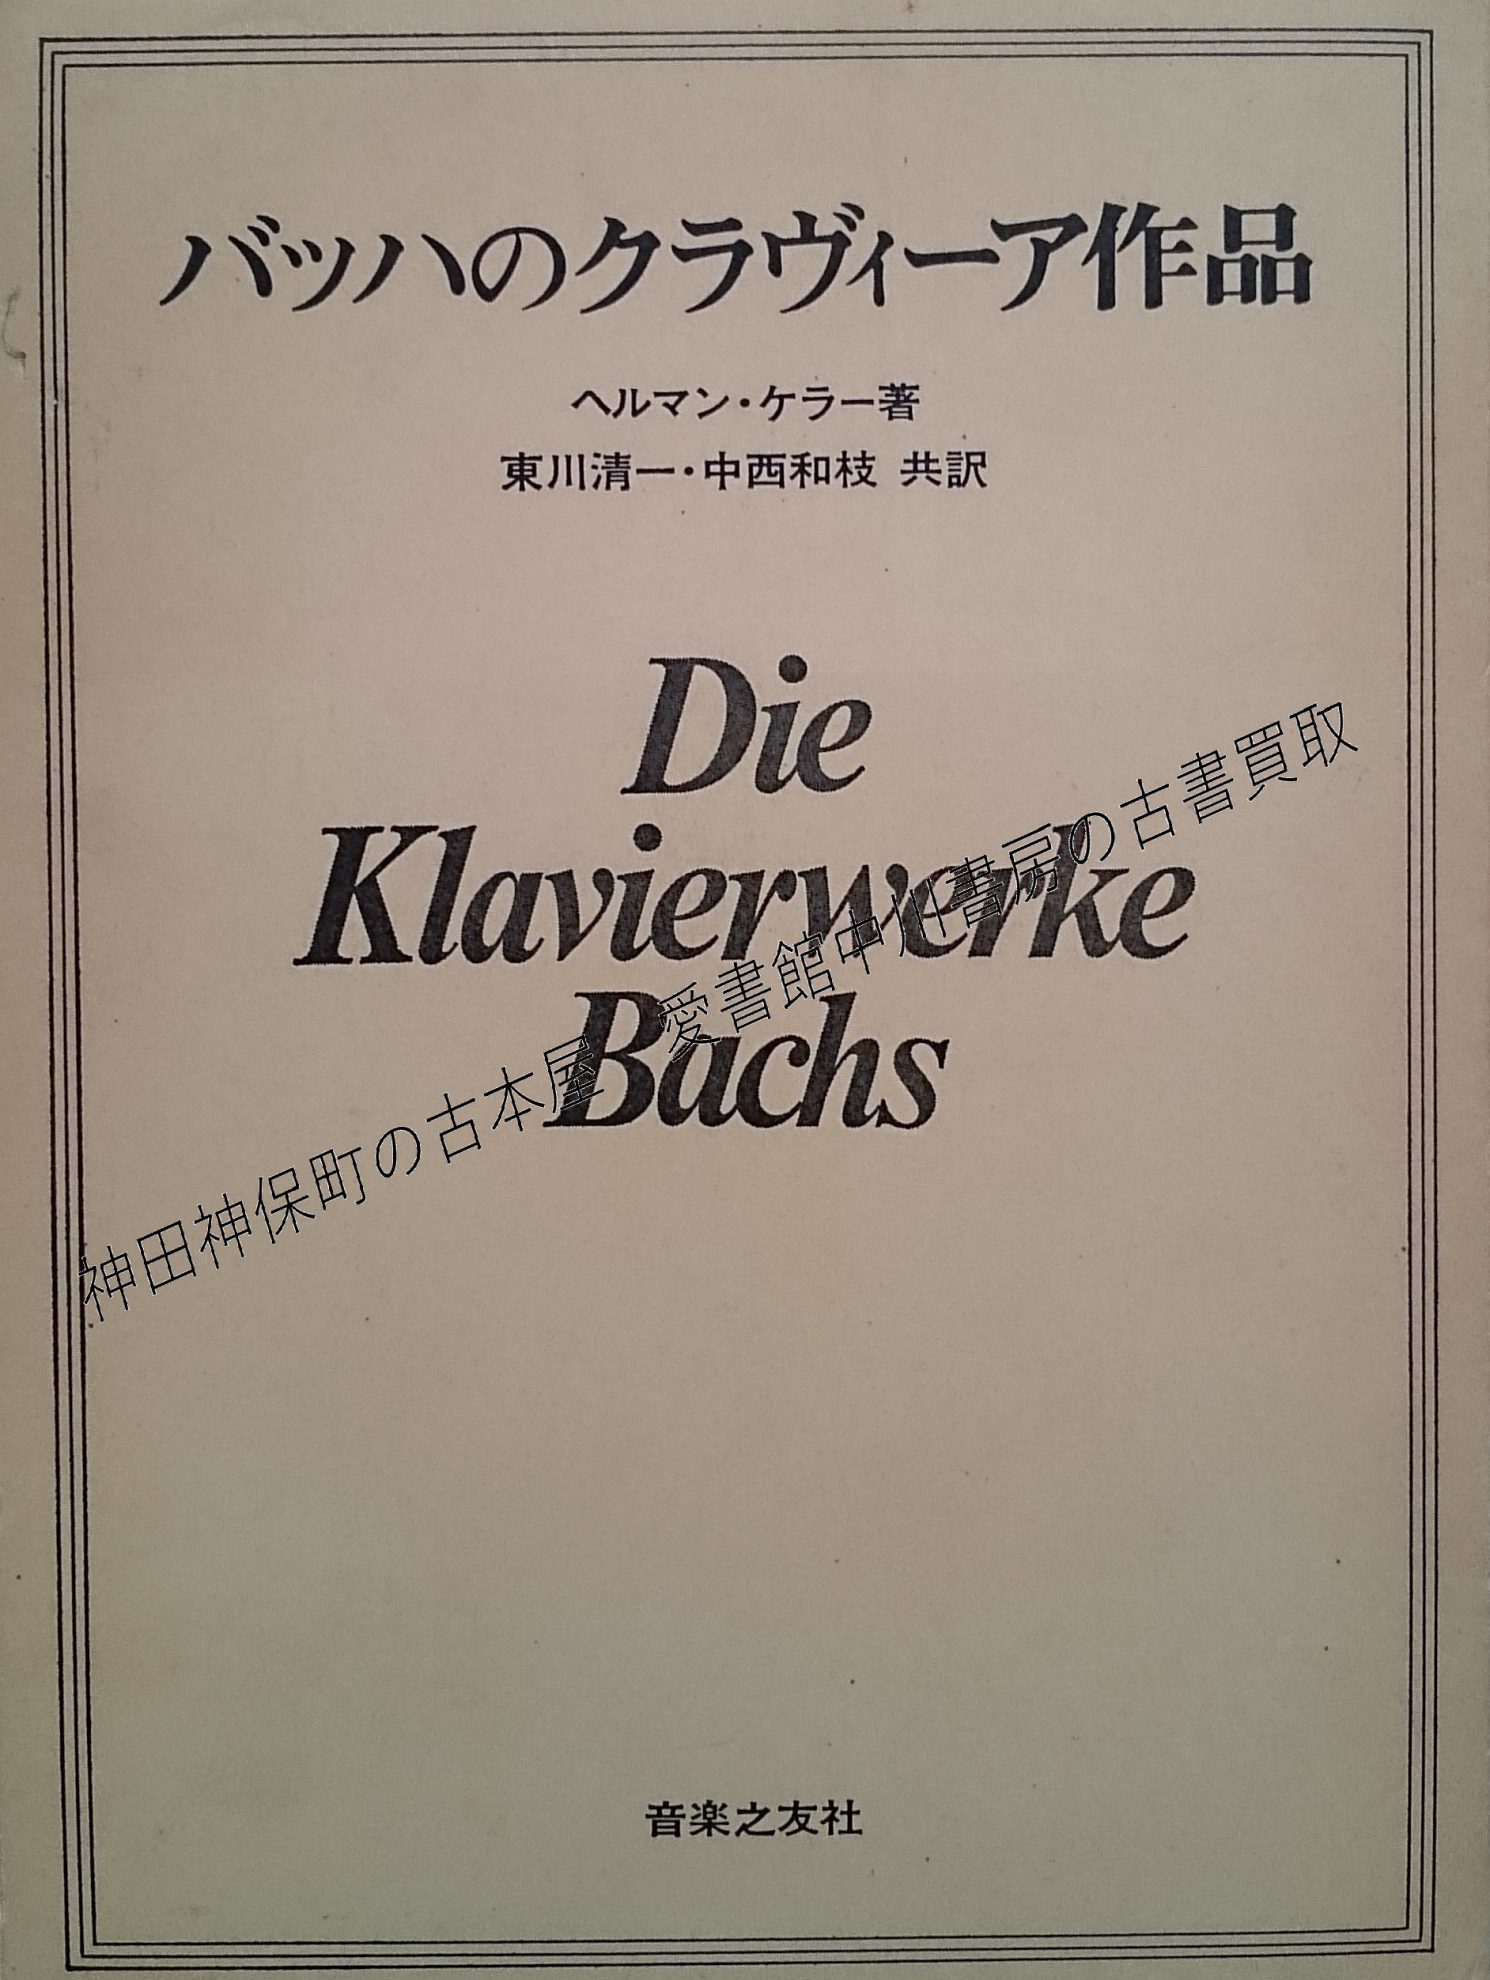 バッハのクラヴィーア作品ほか音楽関係の古書を出張買取いたしました